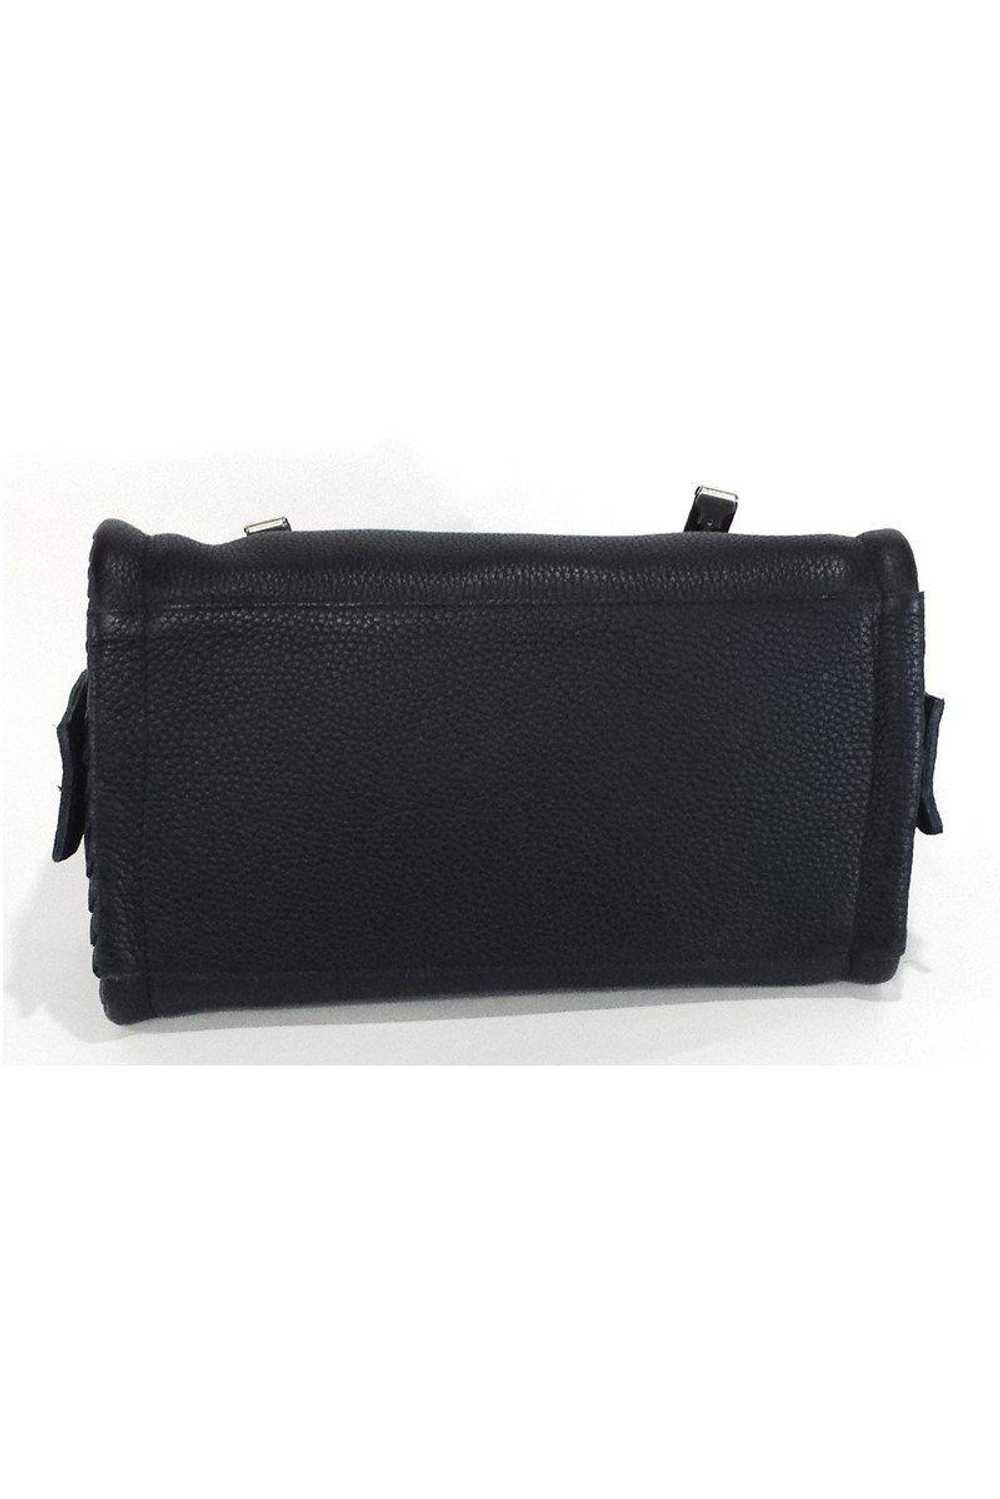 Bottega Veneta - Black Pebbled Leather Handbag - image 7